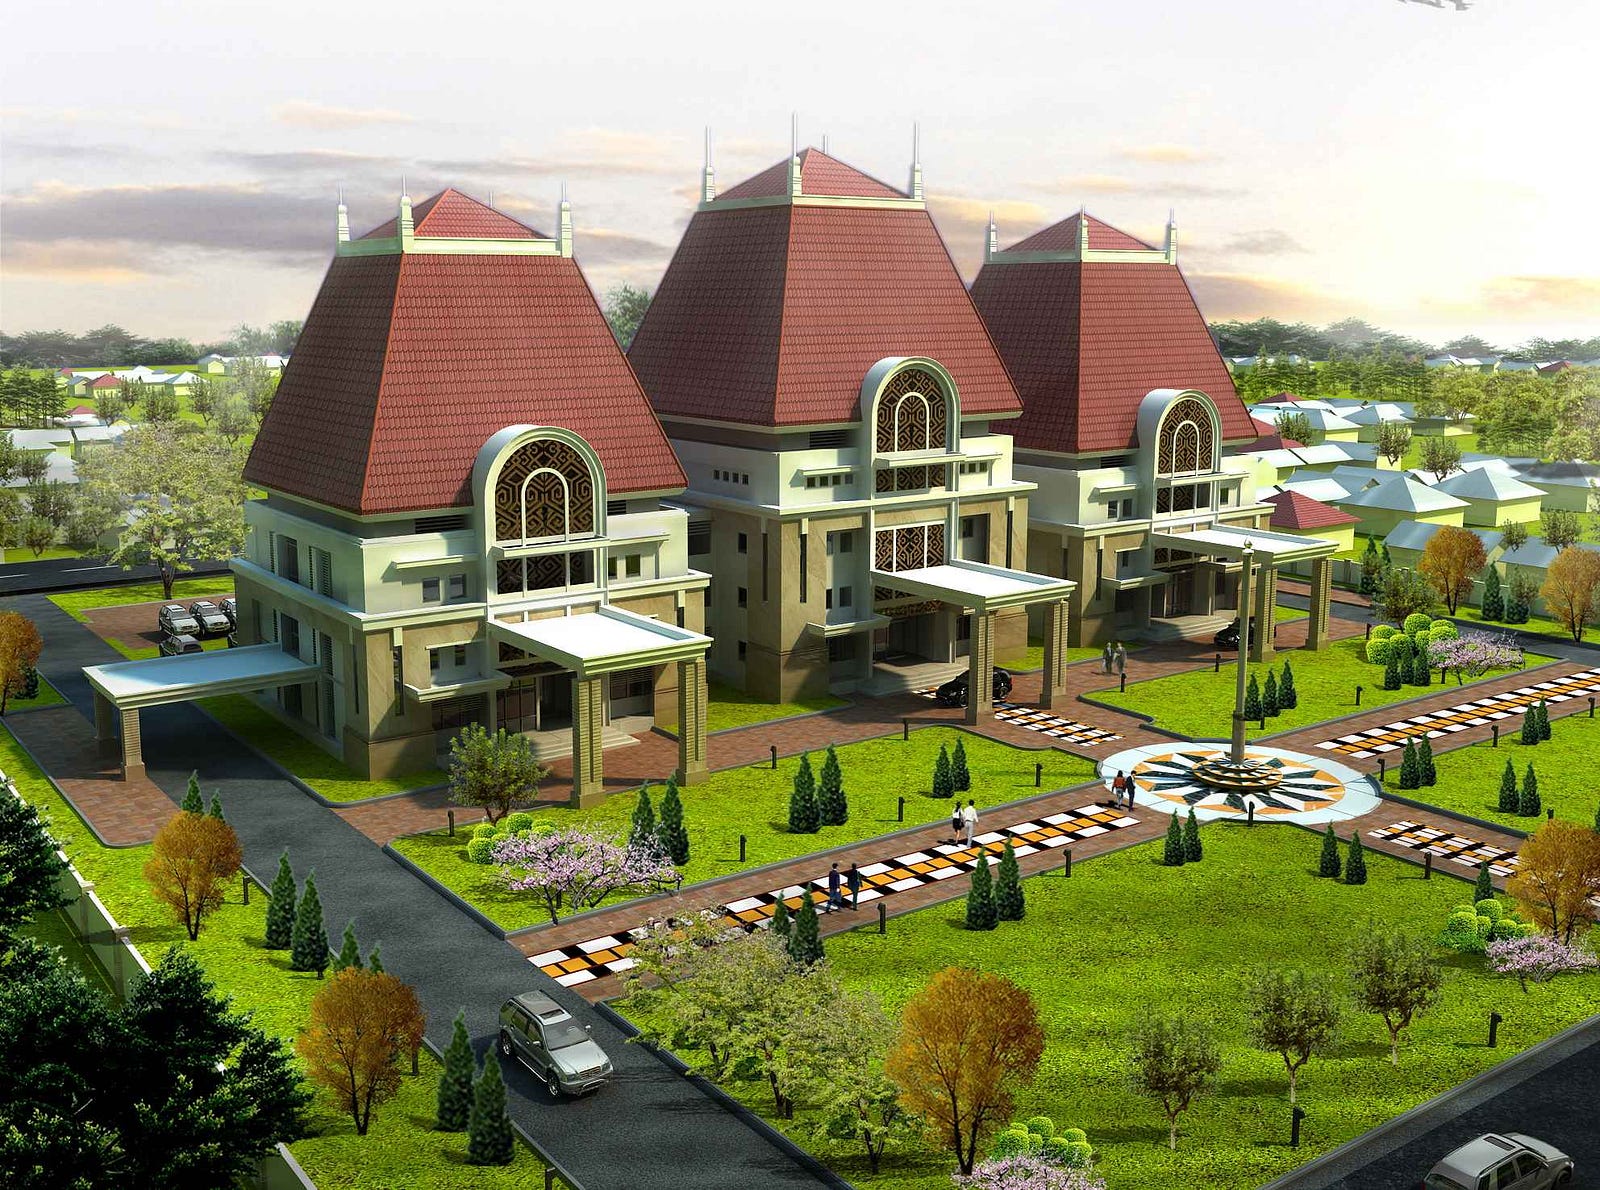 Desain Rumah Kayu Kecil Minimalis Sederhana Desain Interior Surabaya